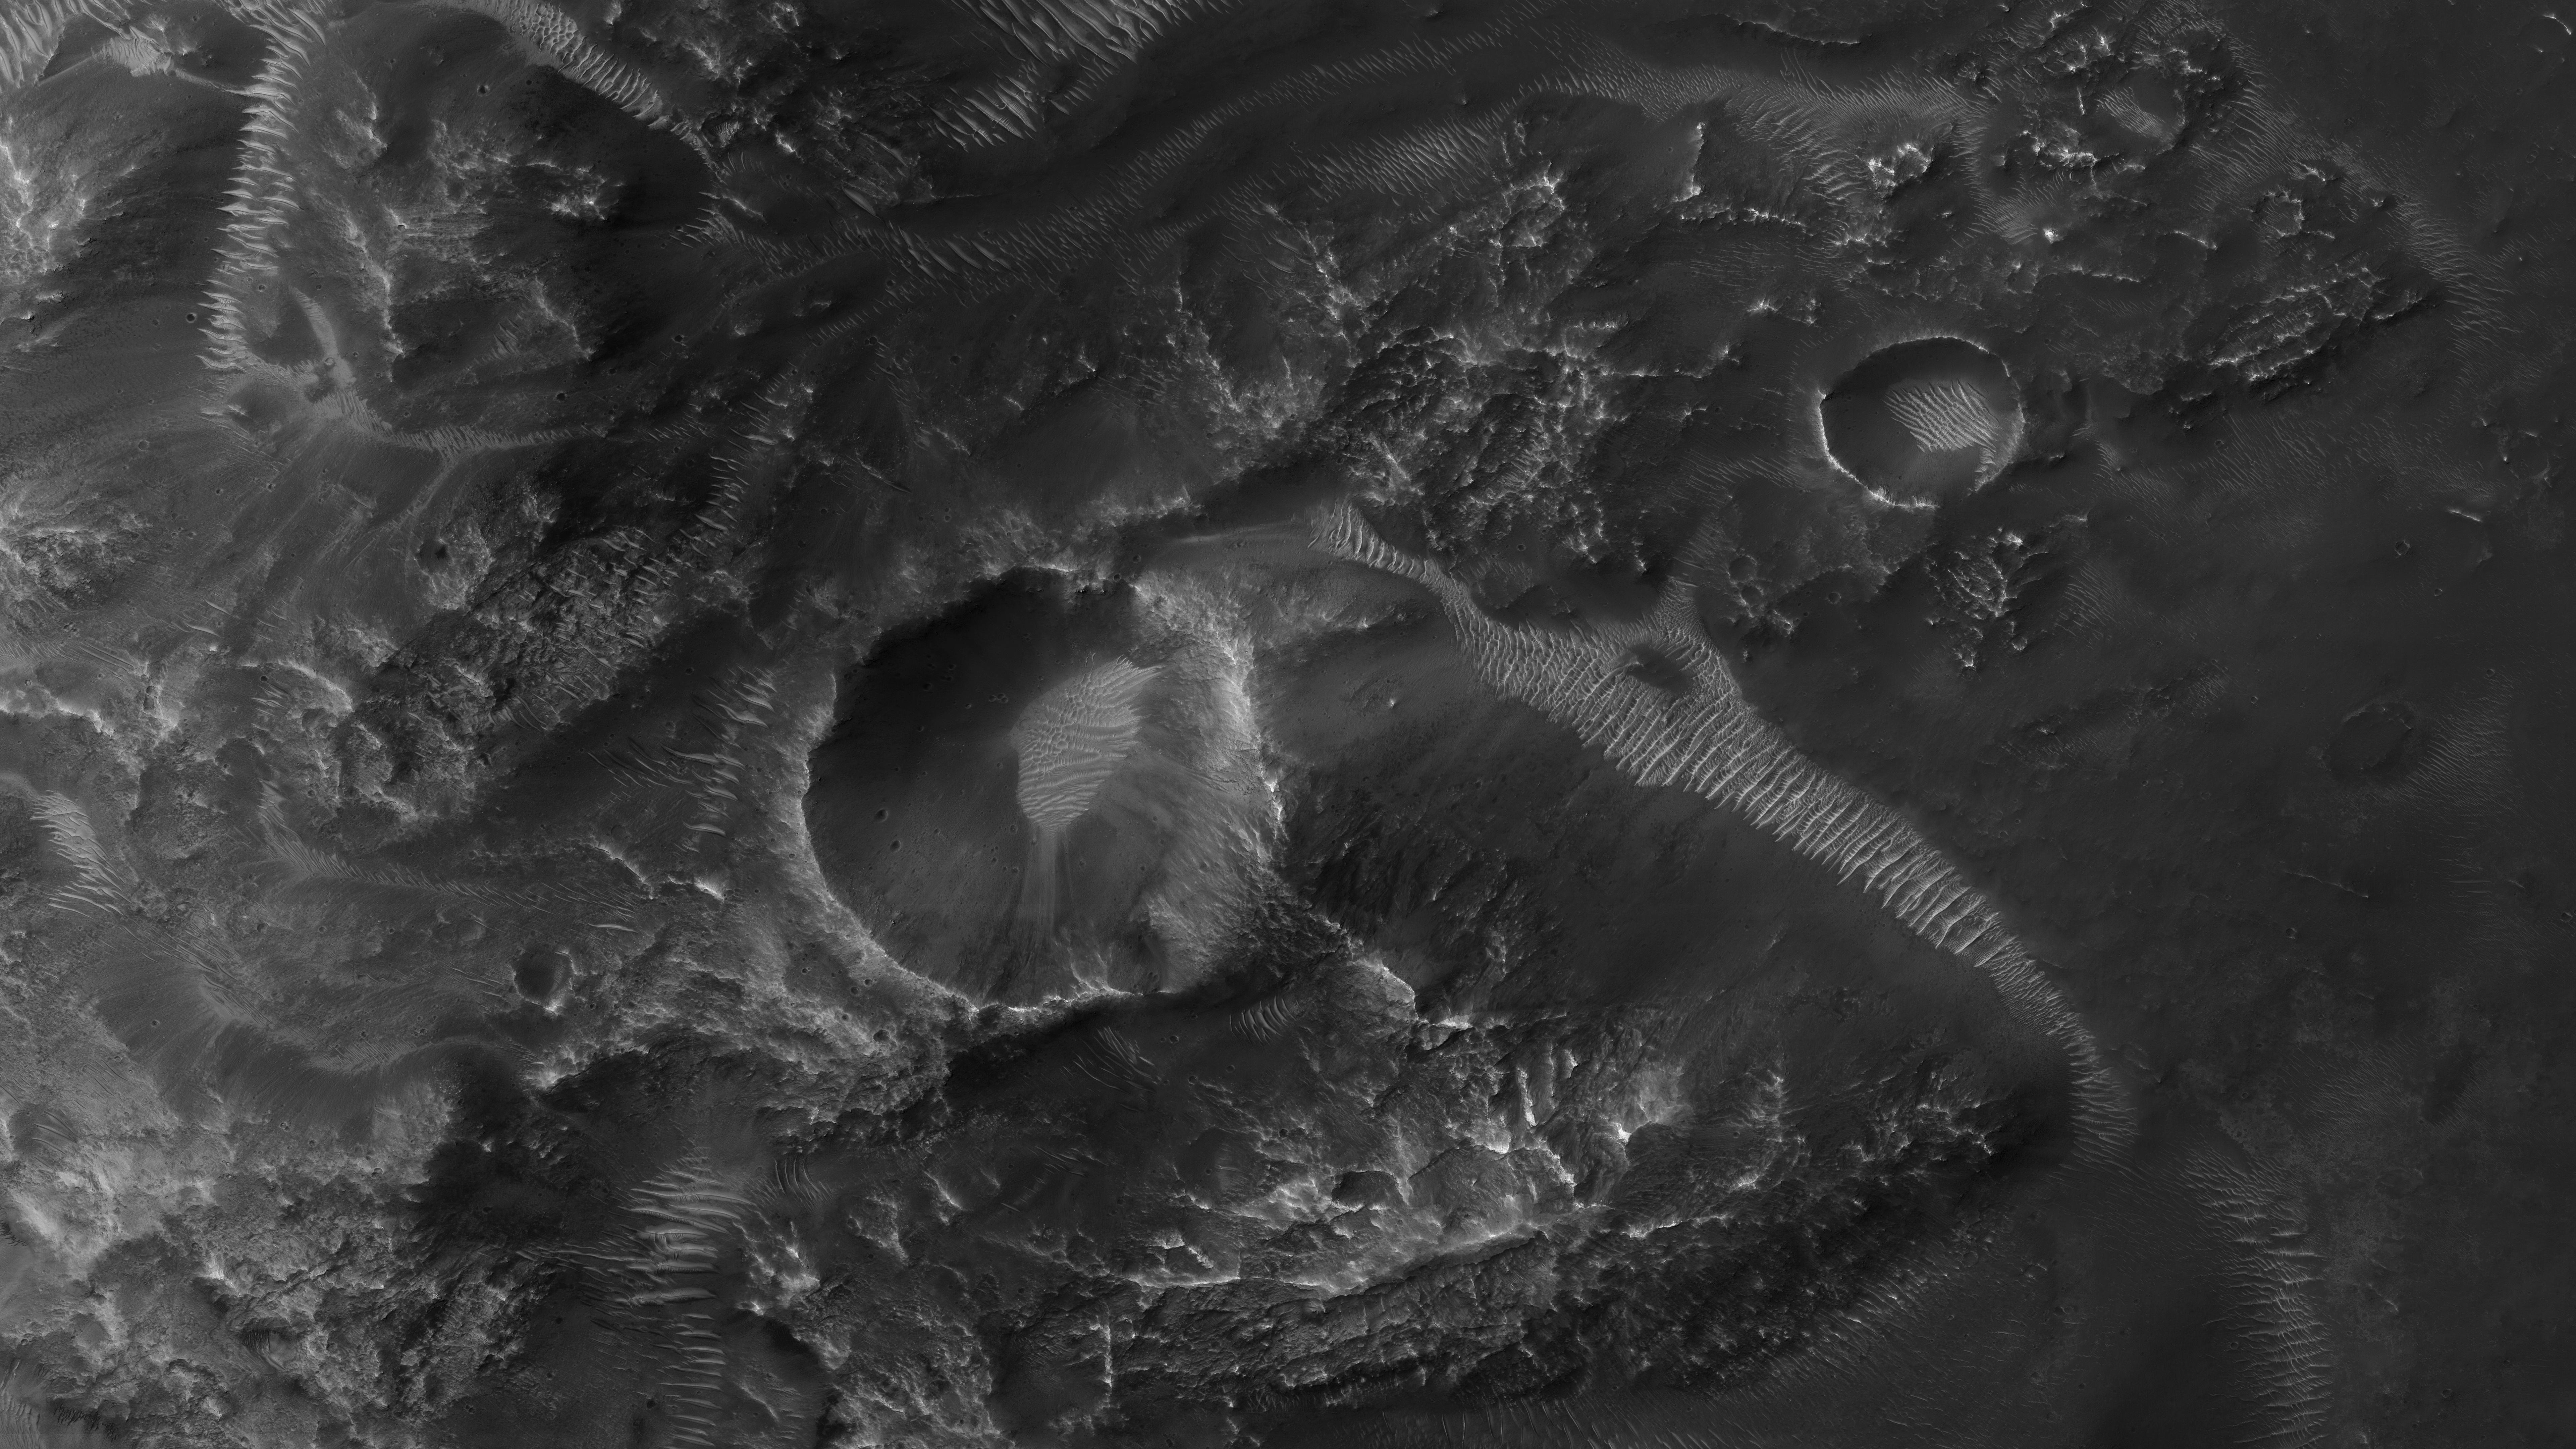 Planet Mars. 5 NEUE Bilder, die die ganze Menschheit verblüfften, fotografieren kleine Krater